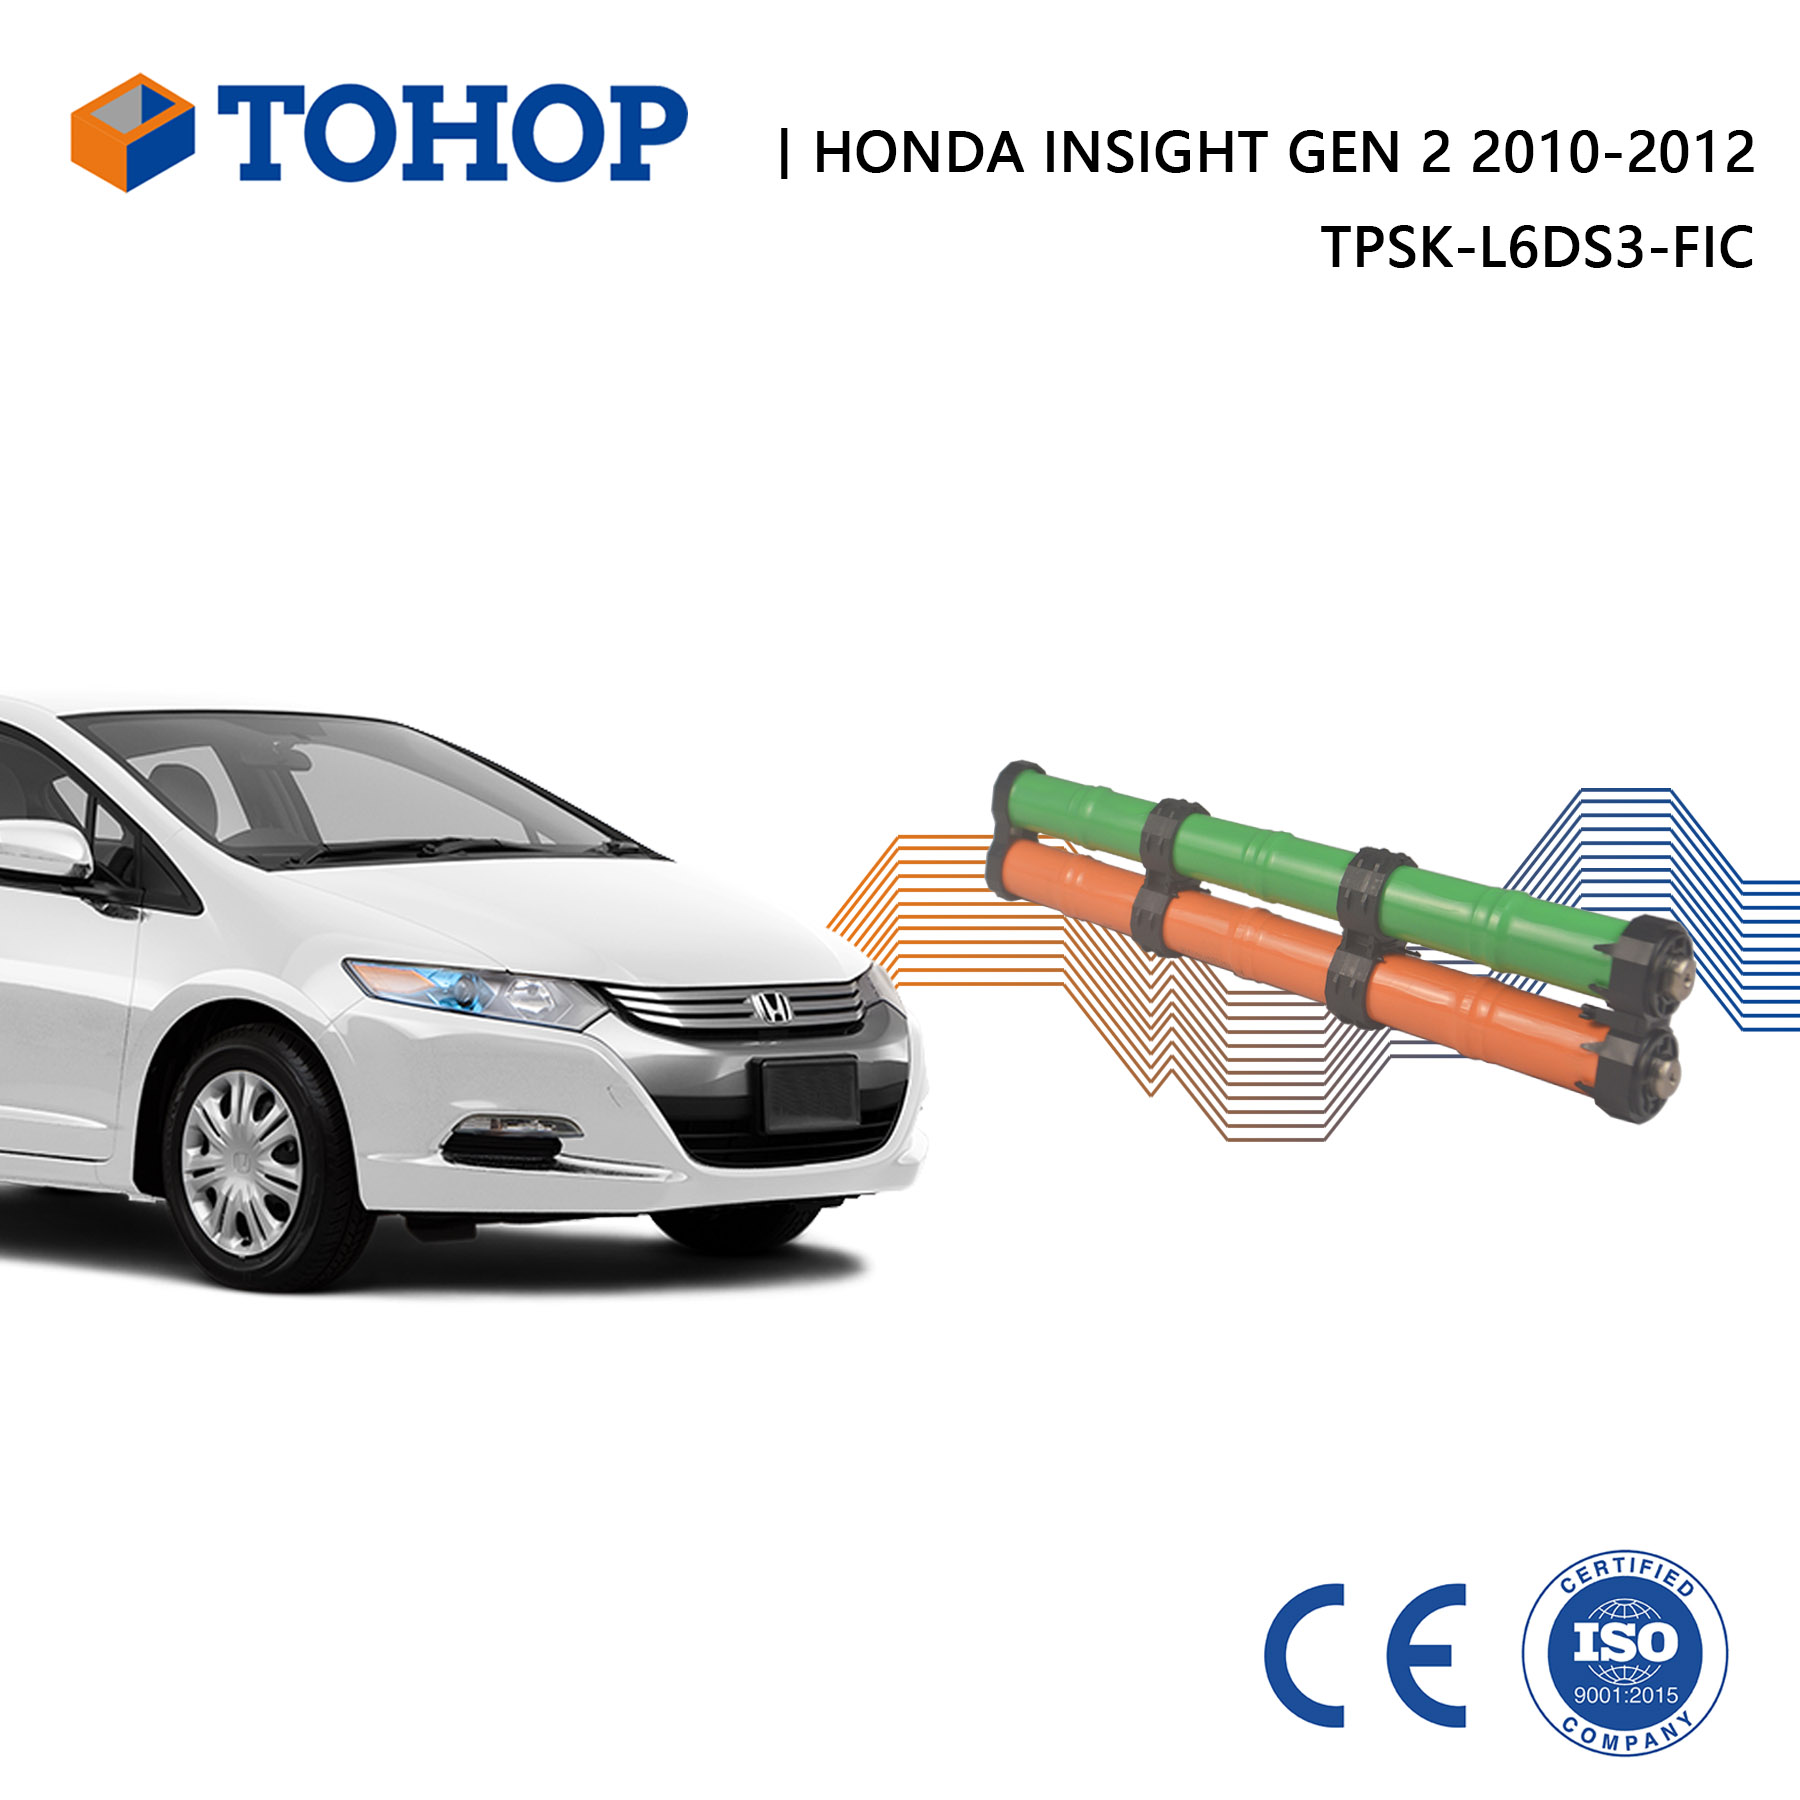 Nueva celda de repuesto de batería híbrida Honda Insight Gen 2 14.4V 6.5Ah